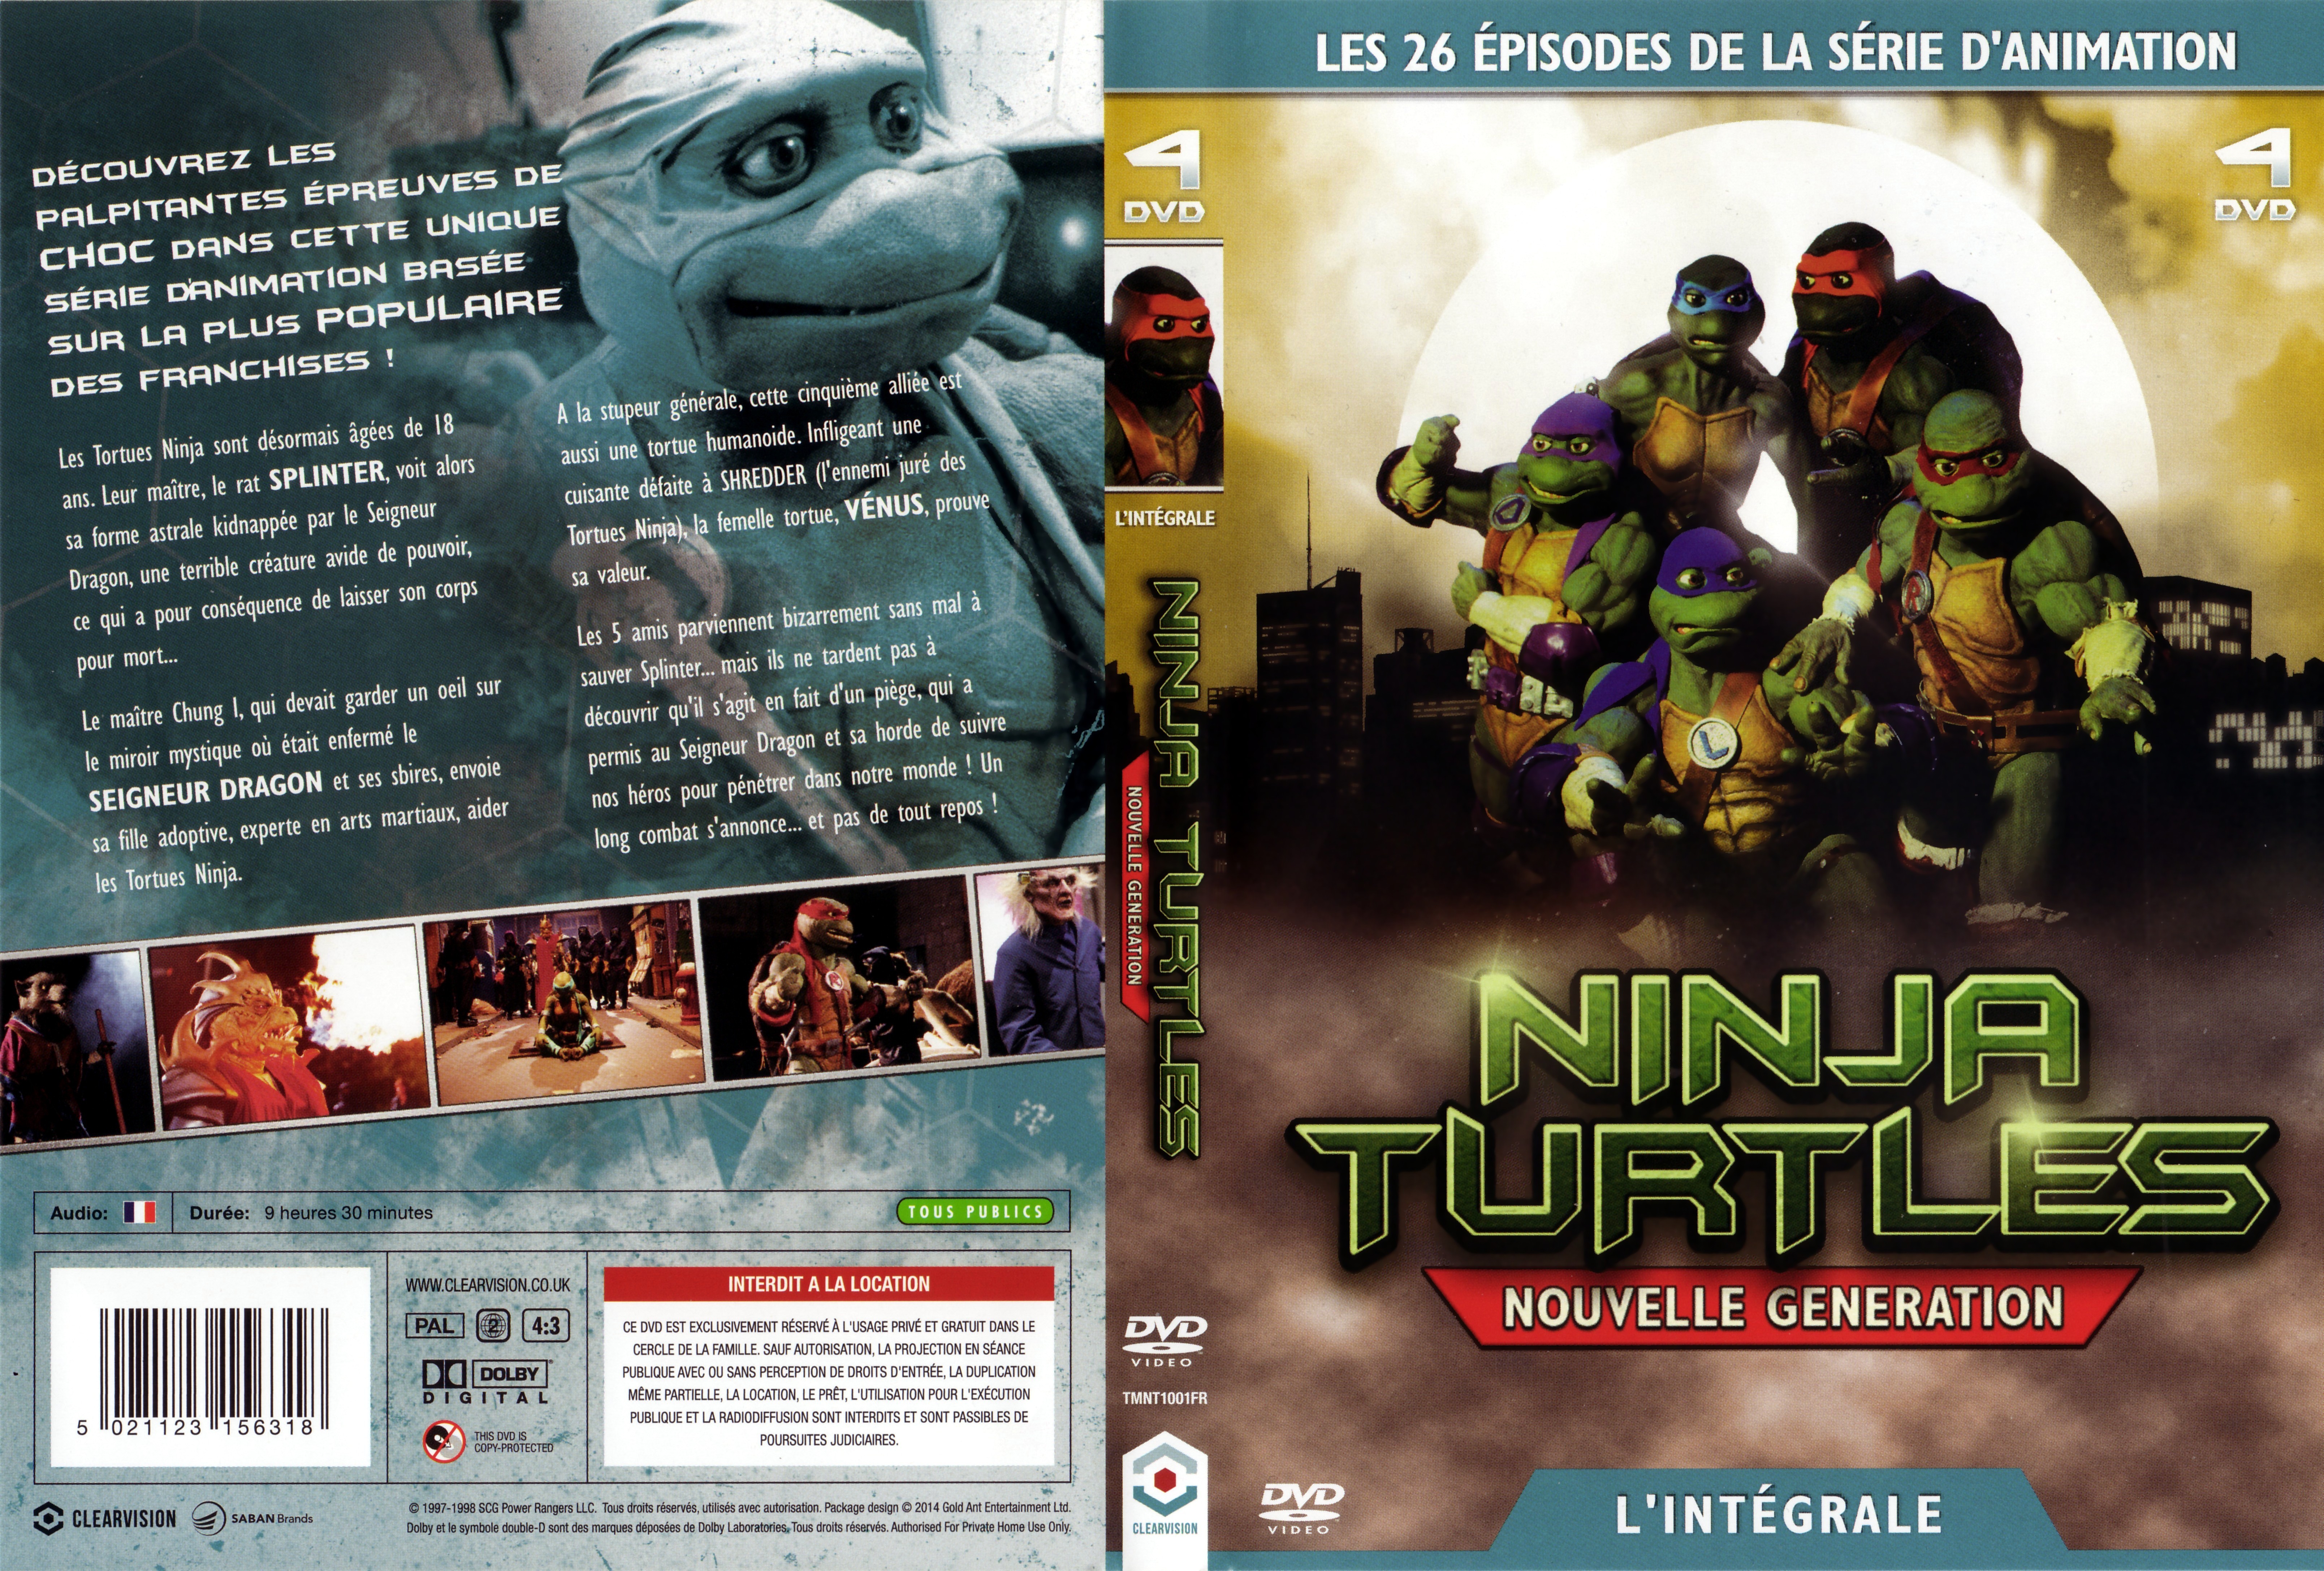 Jaquette DVD Ninja Turtles - Nouvelle gnration srie TV